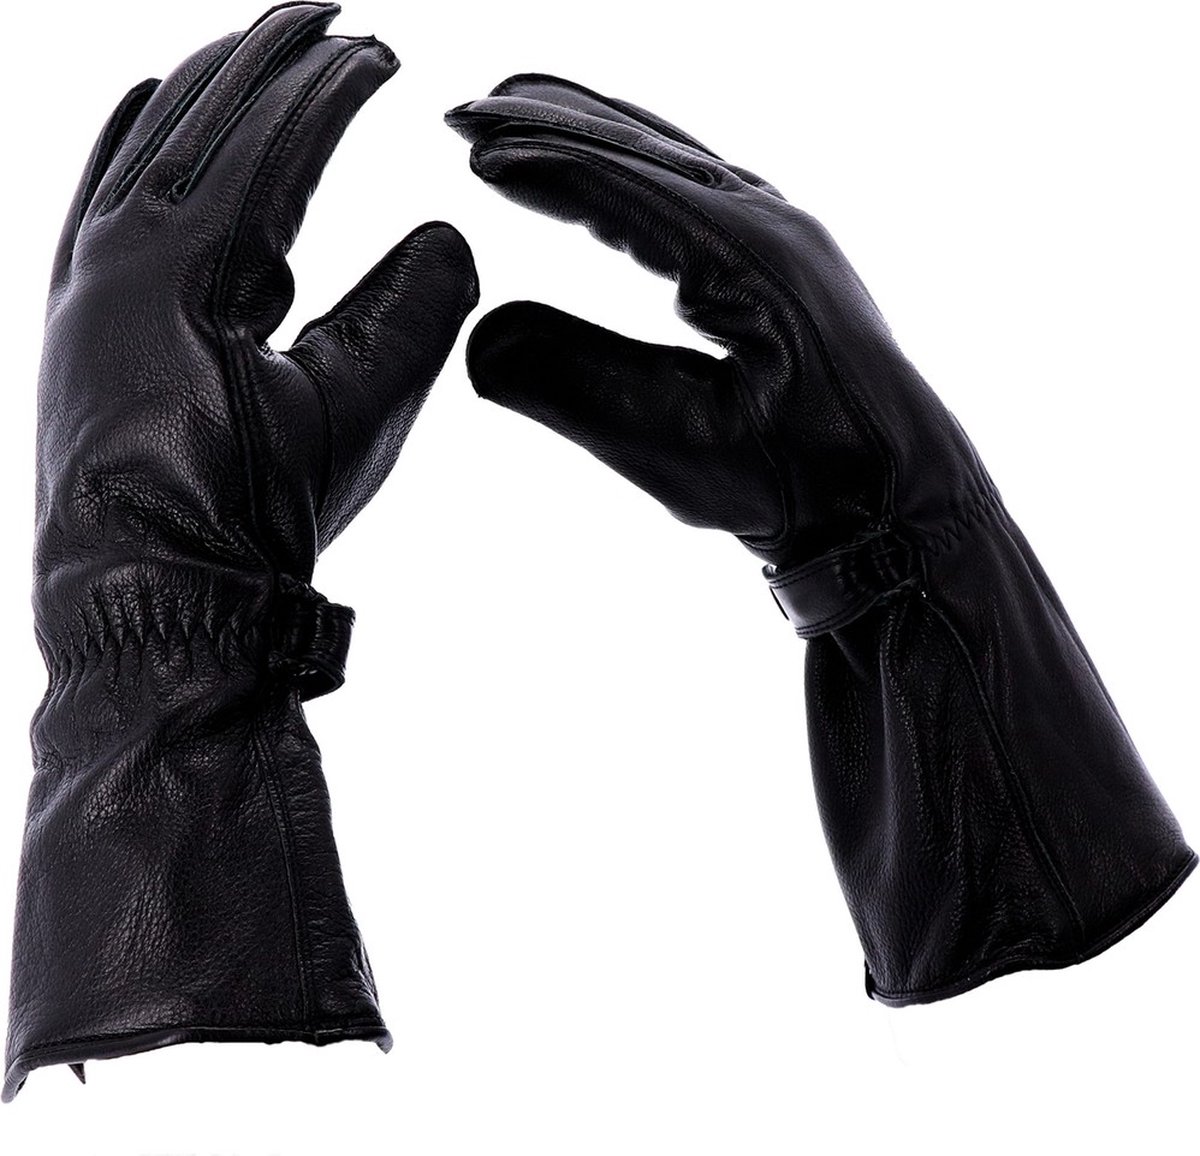 Roeg Motorrad-Handschuhe Jettson Gaunlet Glove Black-L